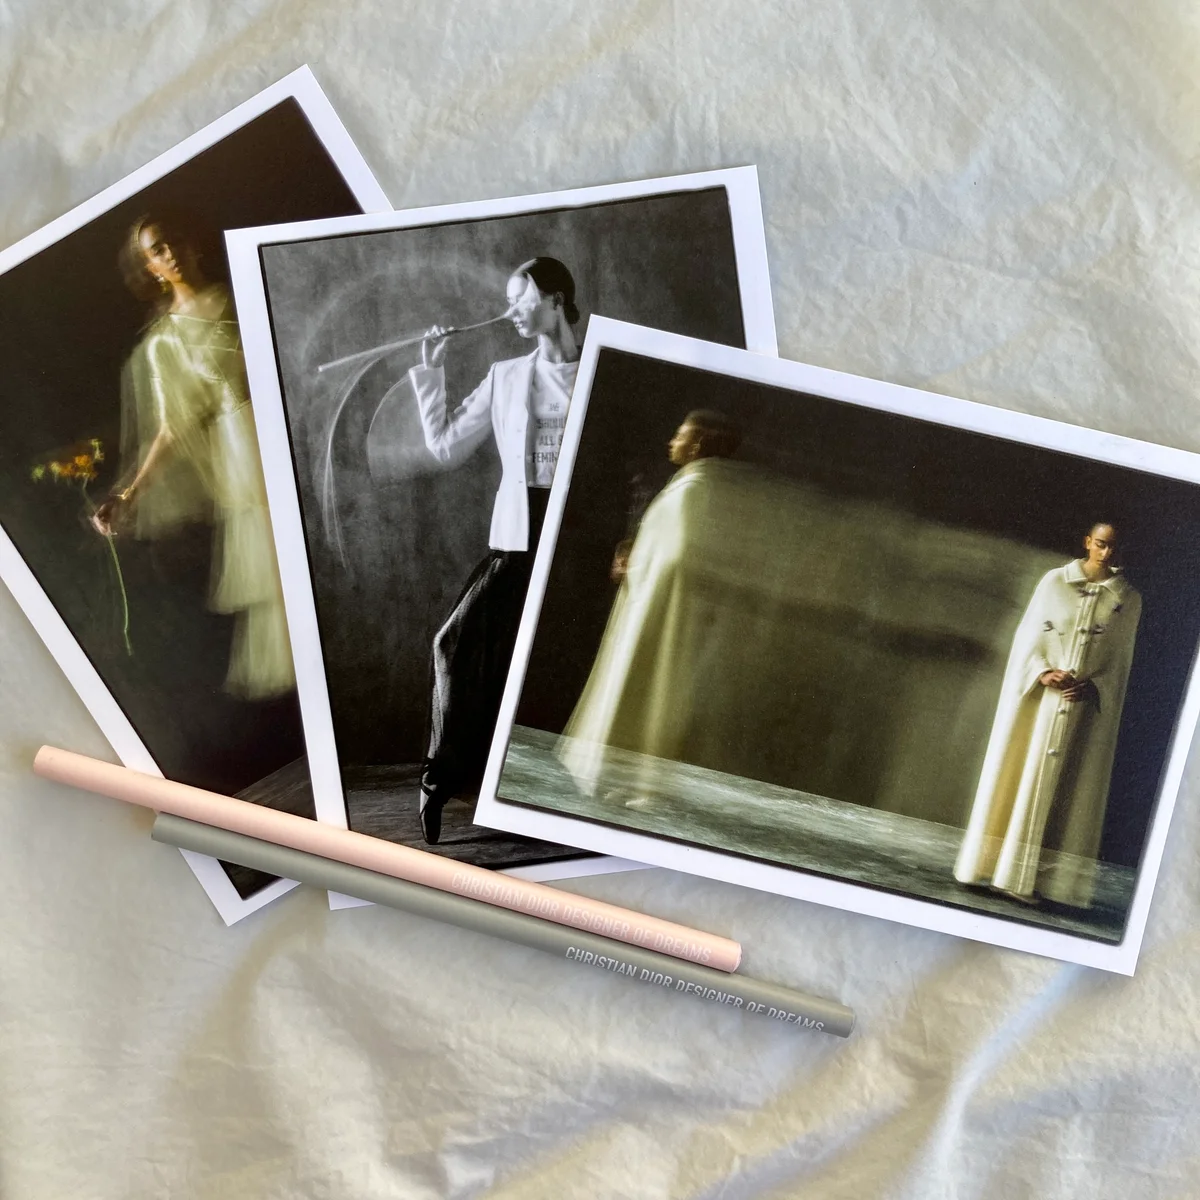 「クリスチャン・ディオール、夢のクチュリエ」展のポストカードと鉛筆